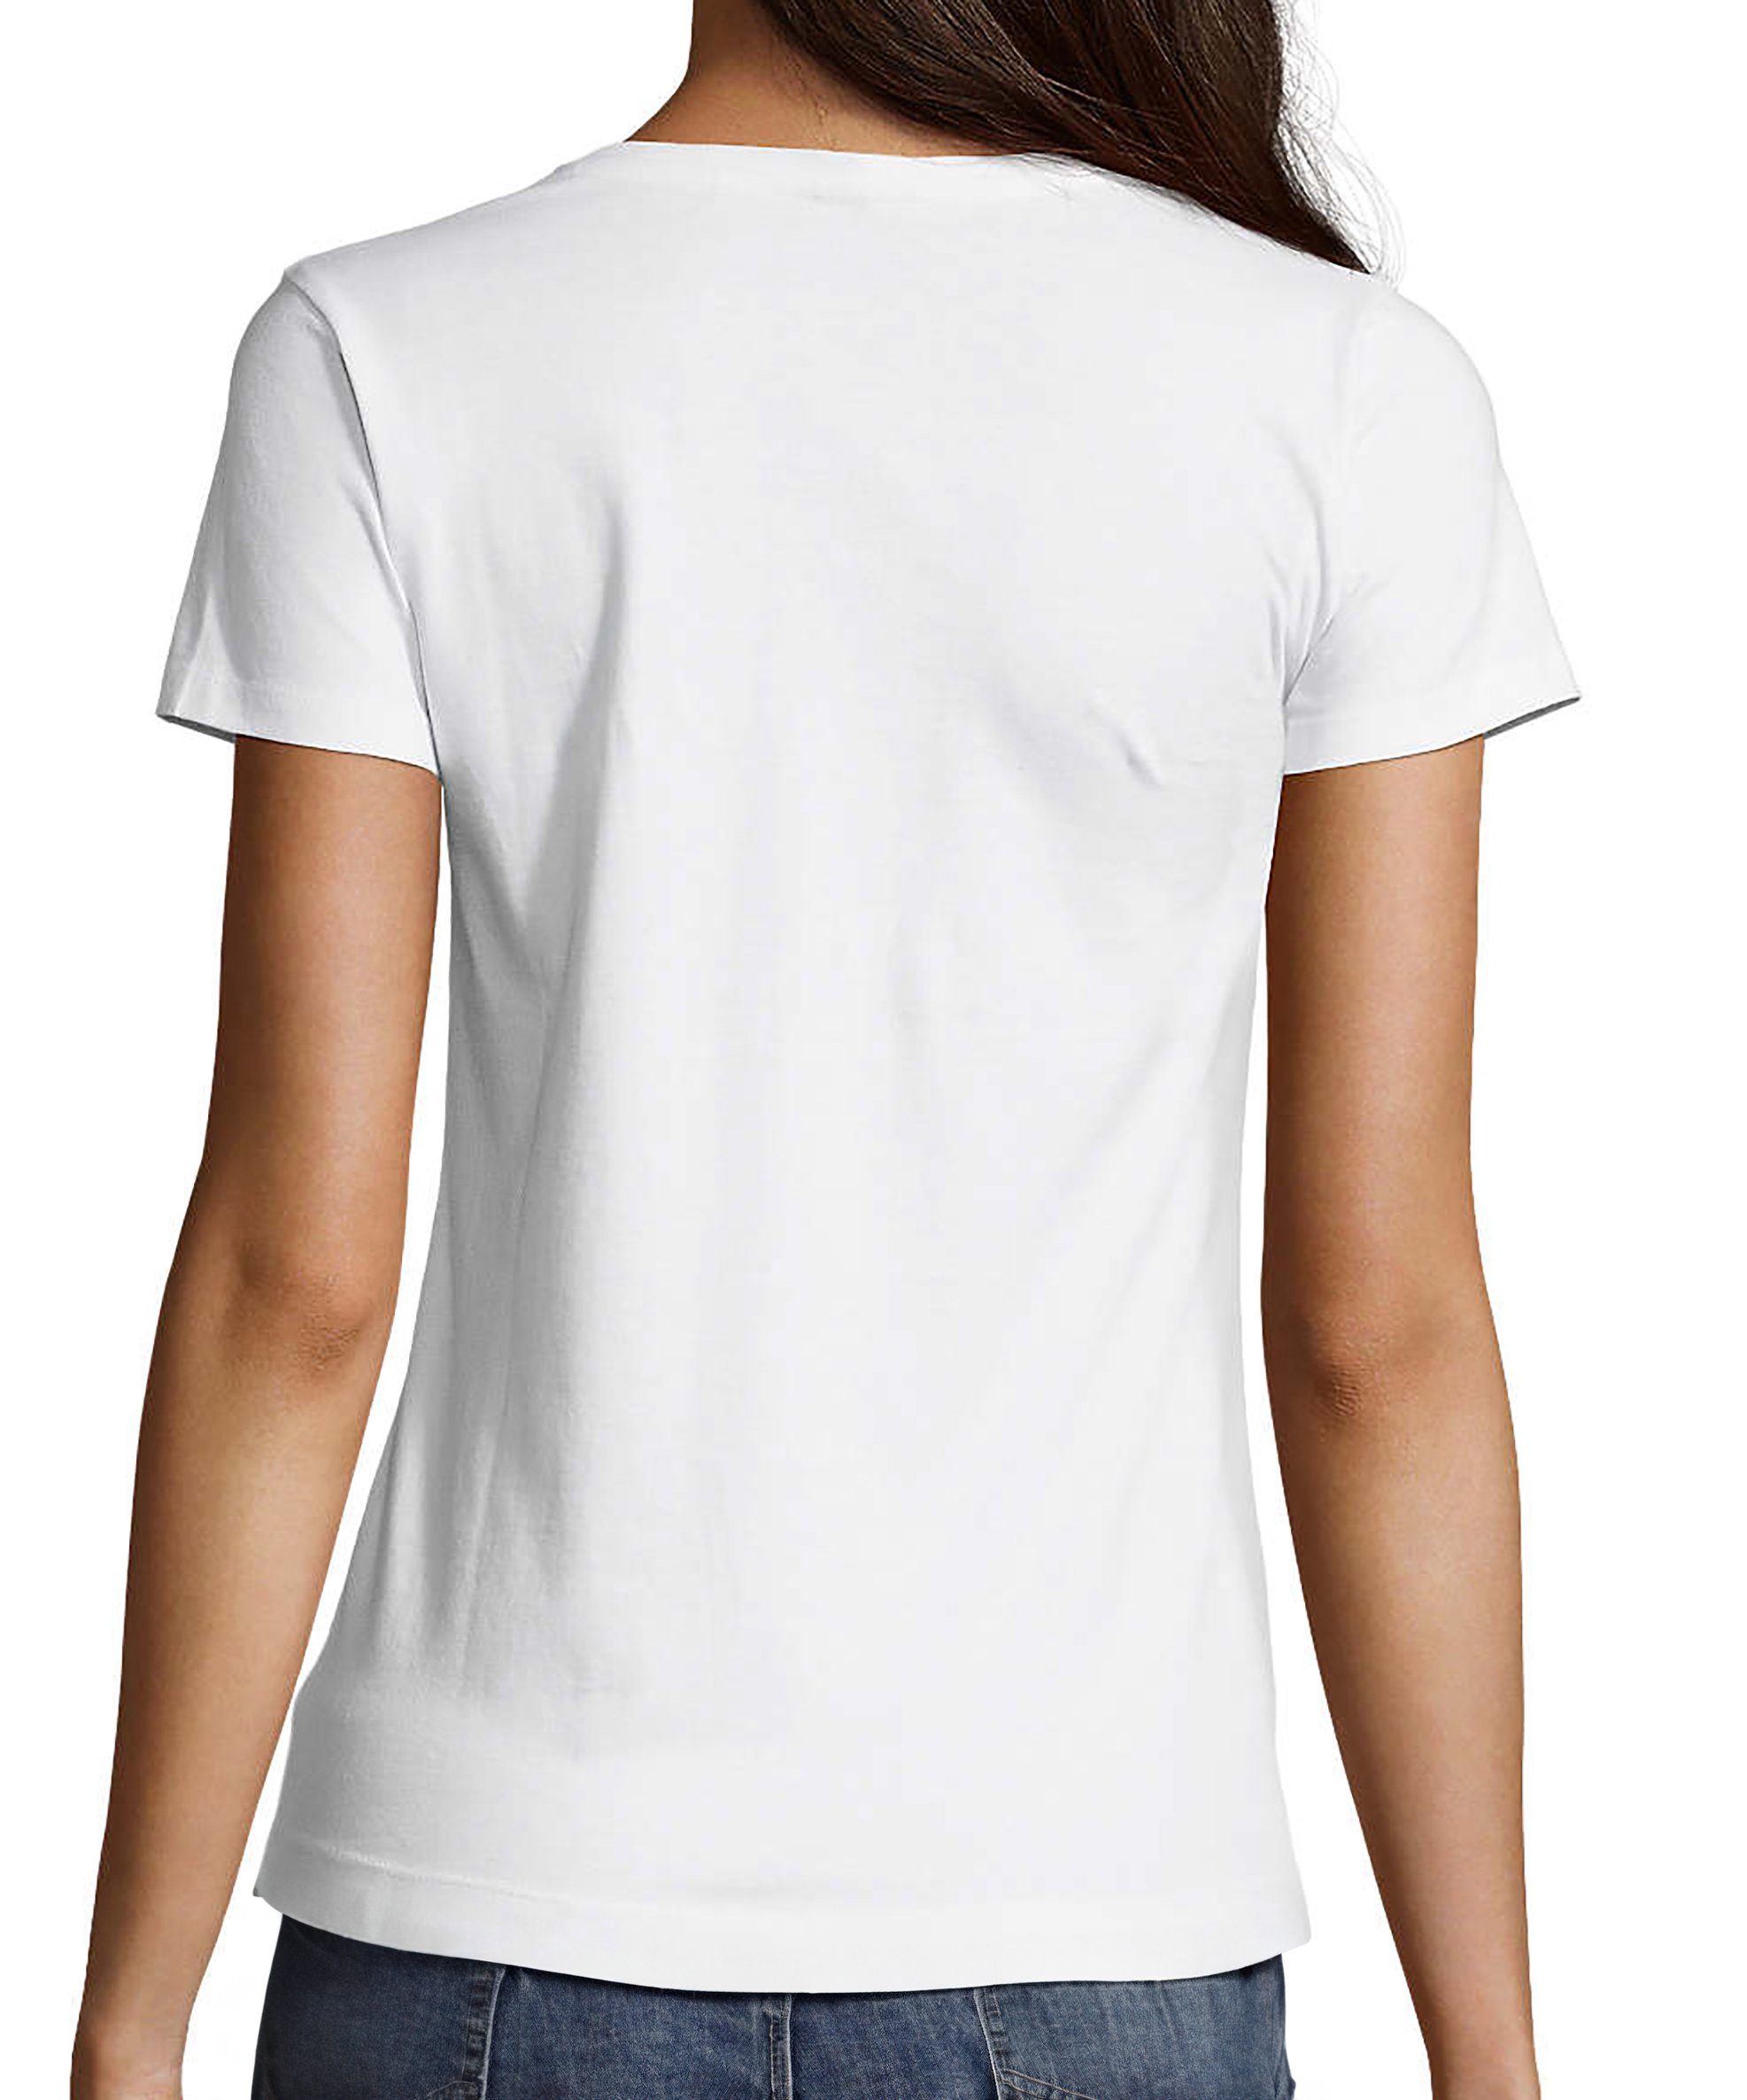 Lächelnder Smiley V-Ausschnitt T-Shirt Print MyDesign24 Shirt Fit, Damen i297 weiss pastellfarbener Baumwollshirt mit Aufdruck Smiley - Slim